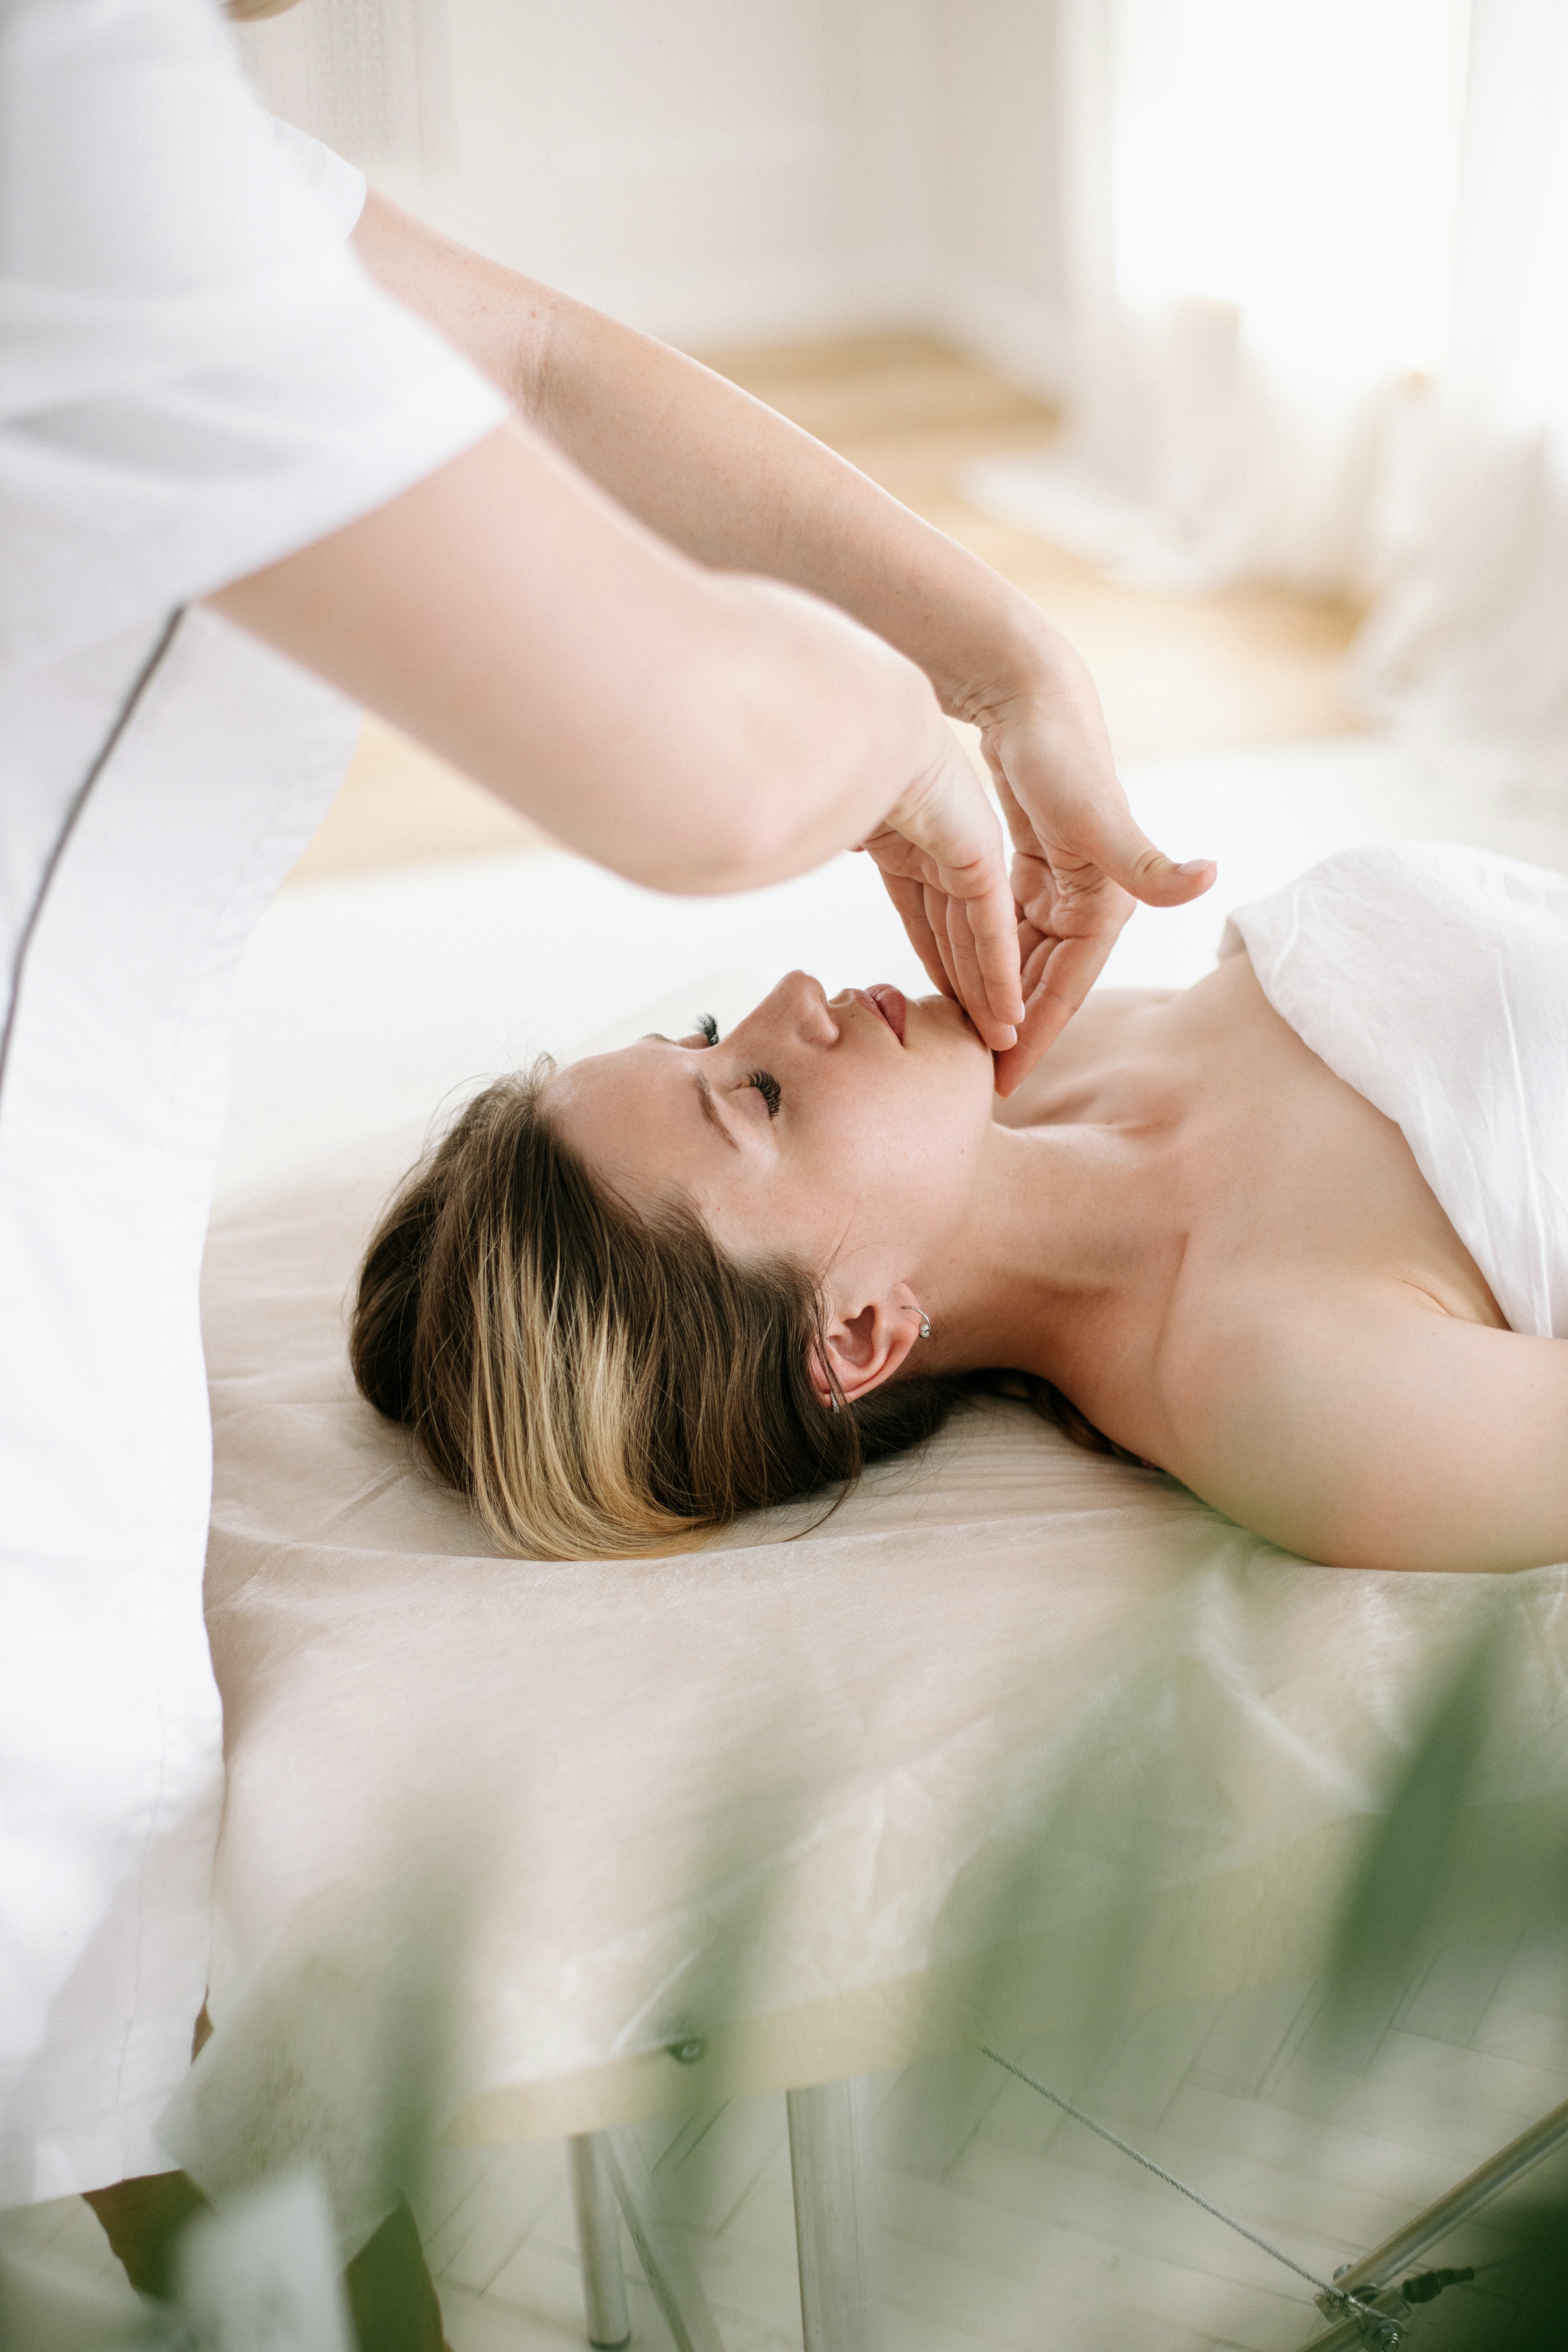 Thai massage and kobido facial lifting effect